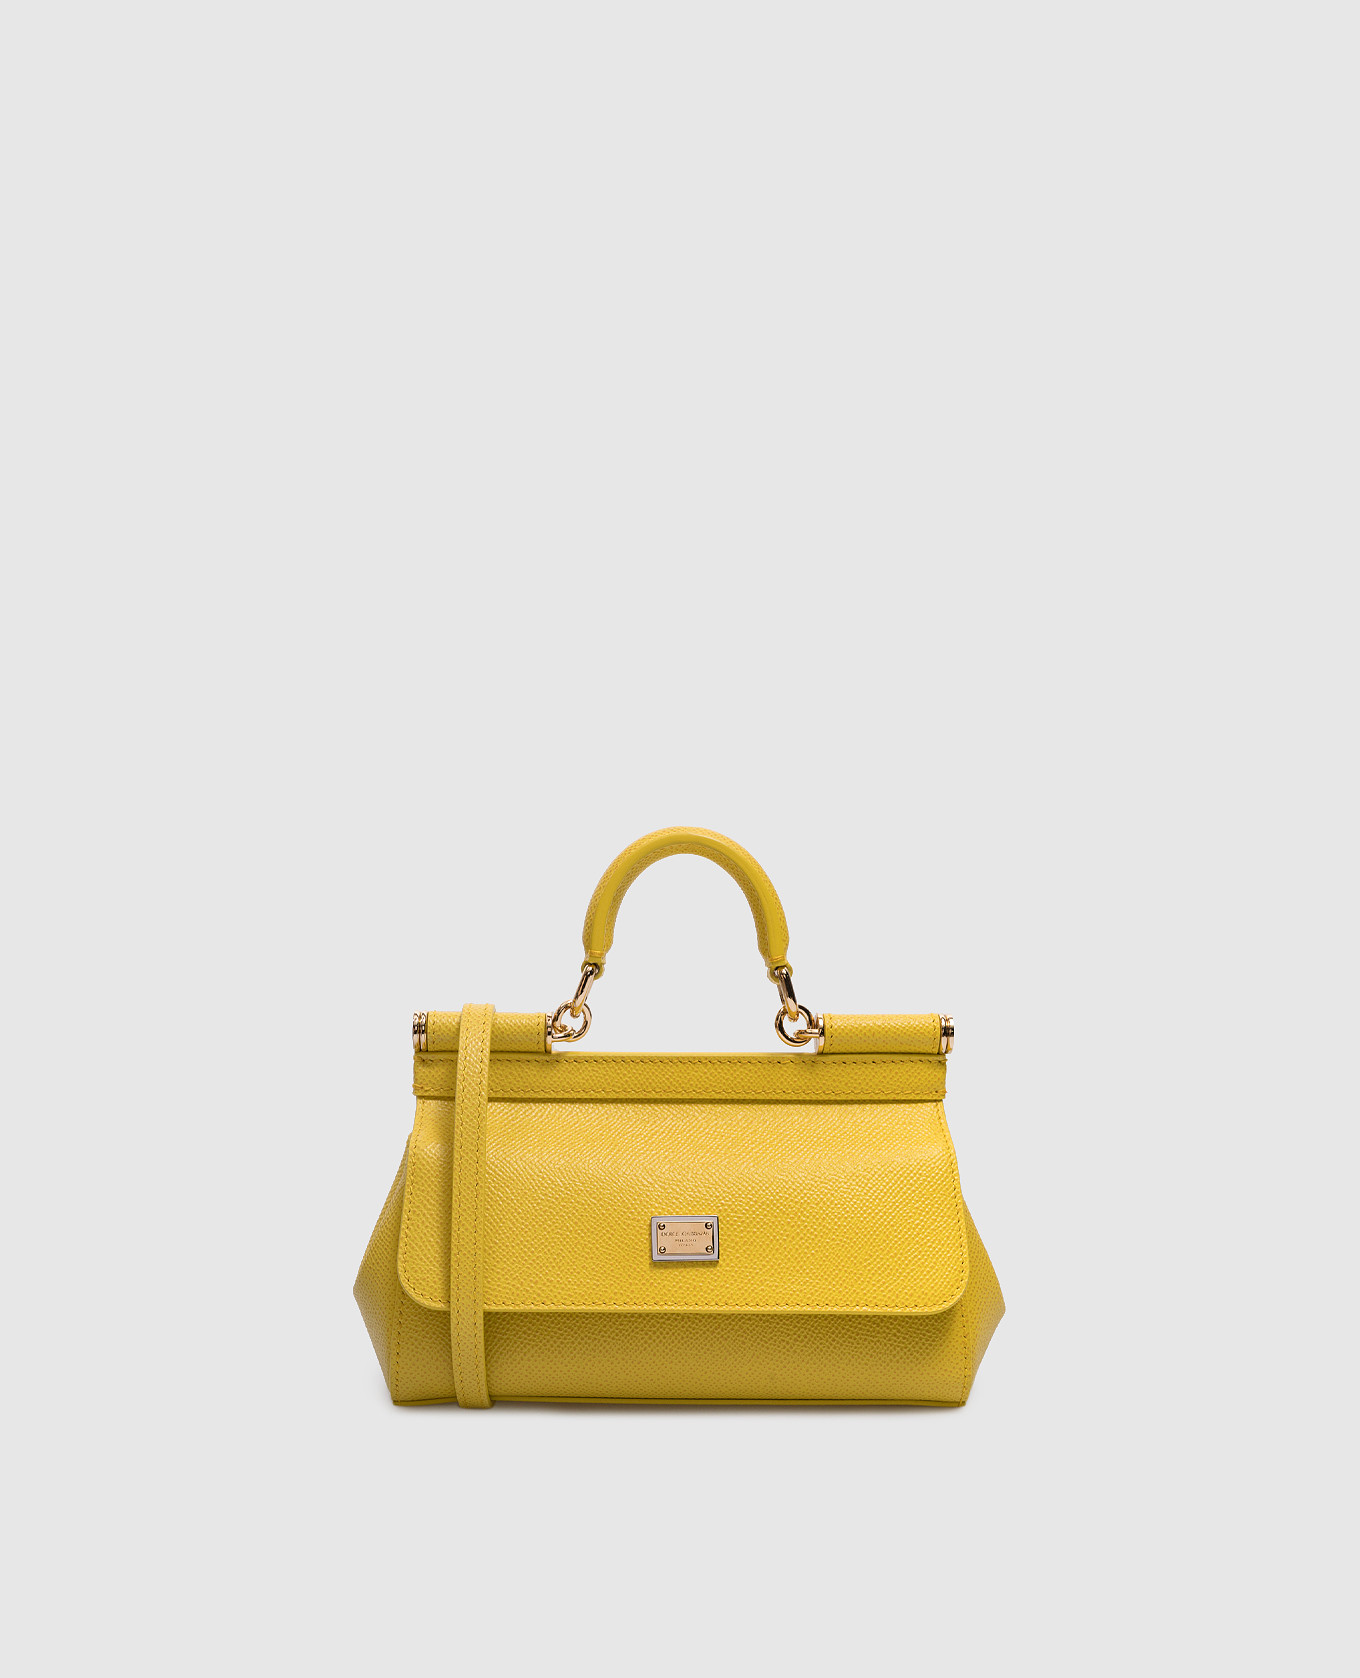 Желтая кожаная сумка SICILY с металлическим логотипом.